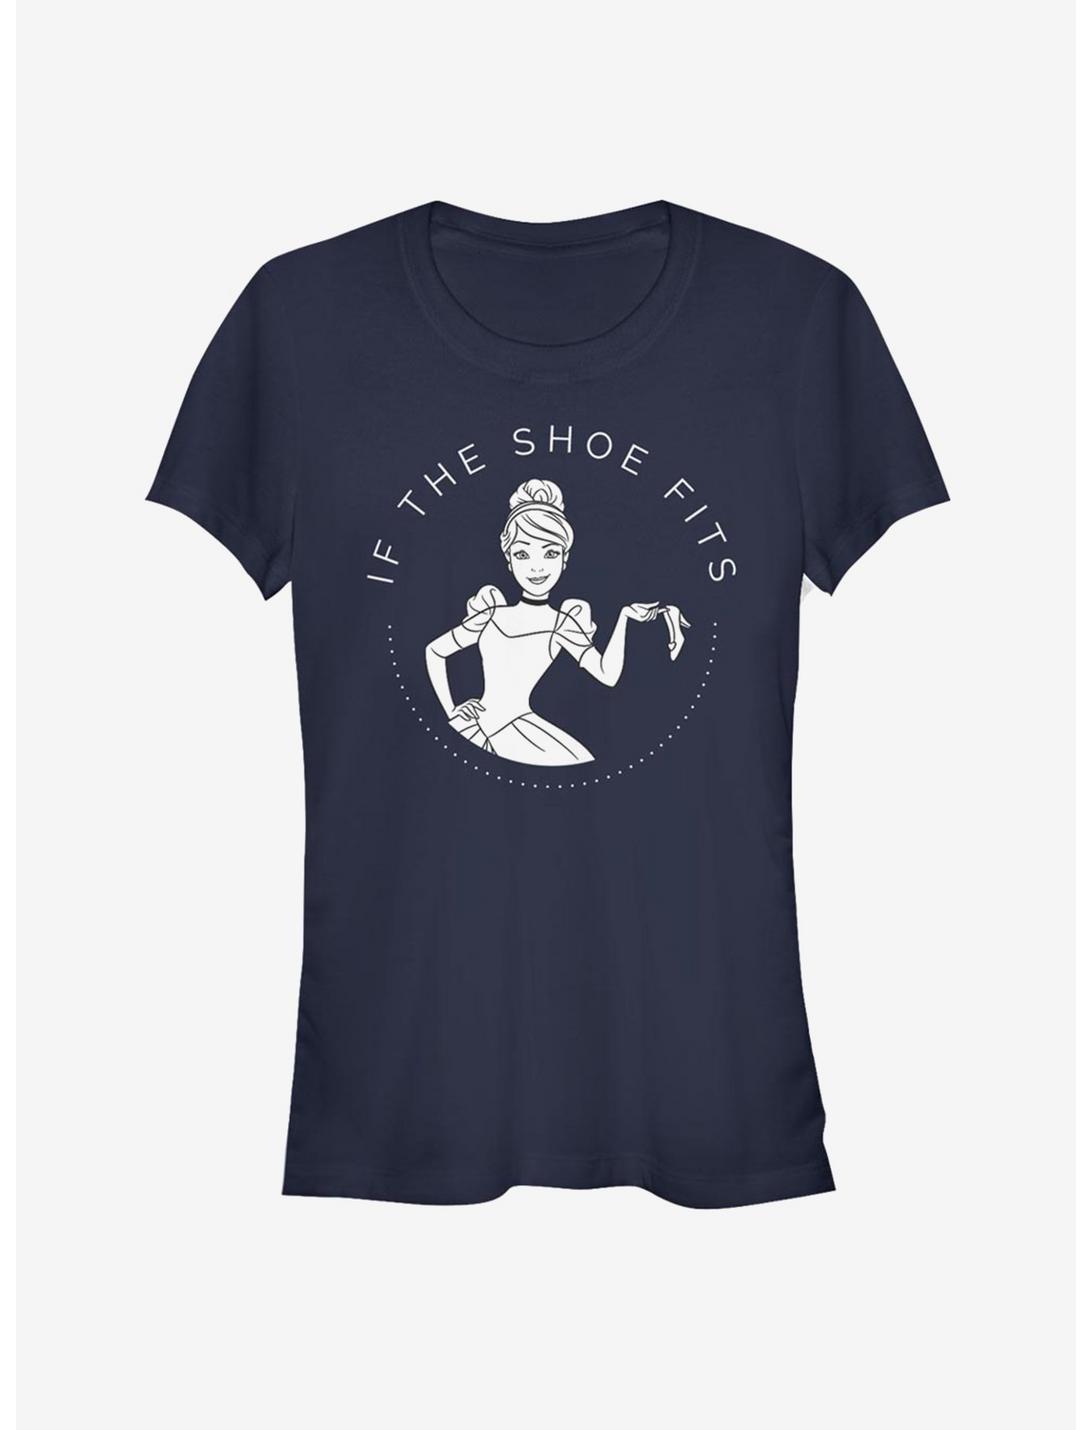 Disney Cinderella Classic Shoe Fits Girls T-Shirt, NAVY, hi-res